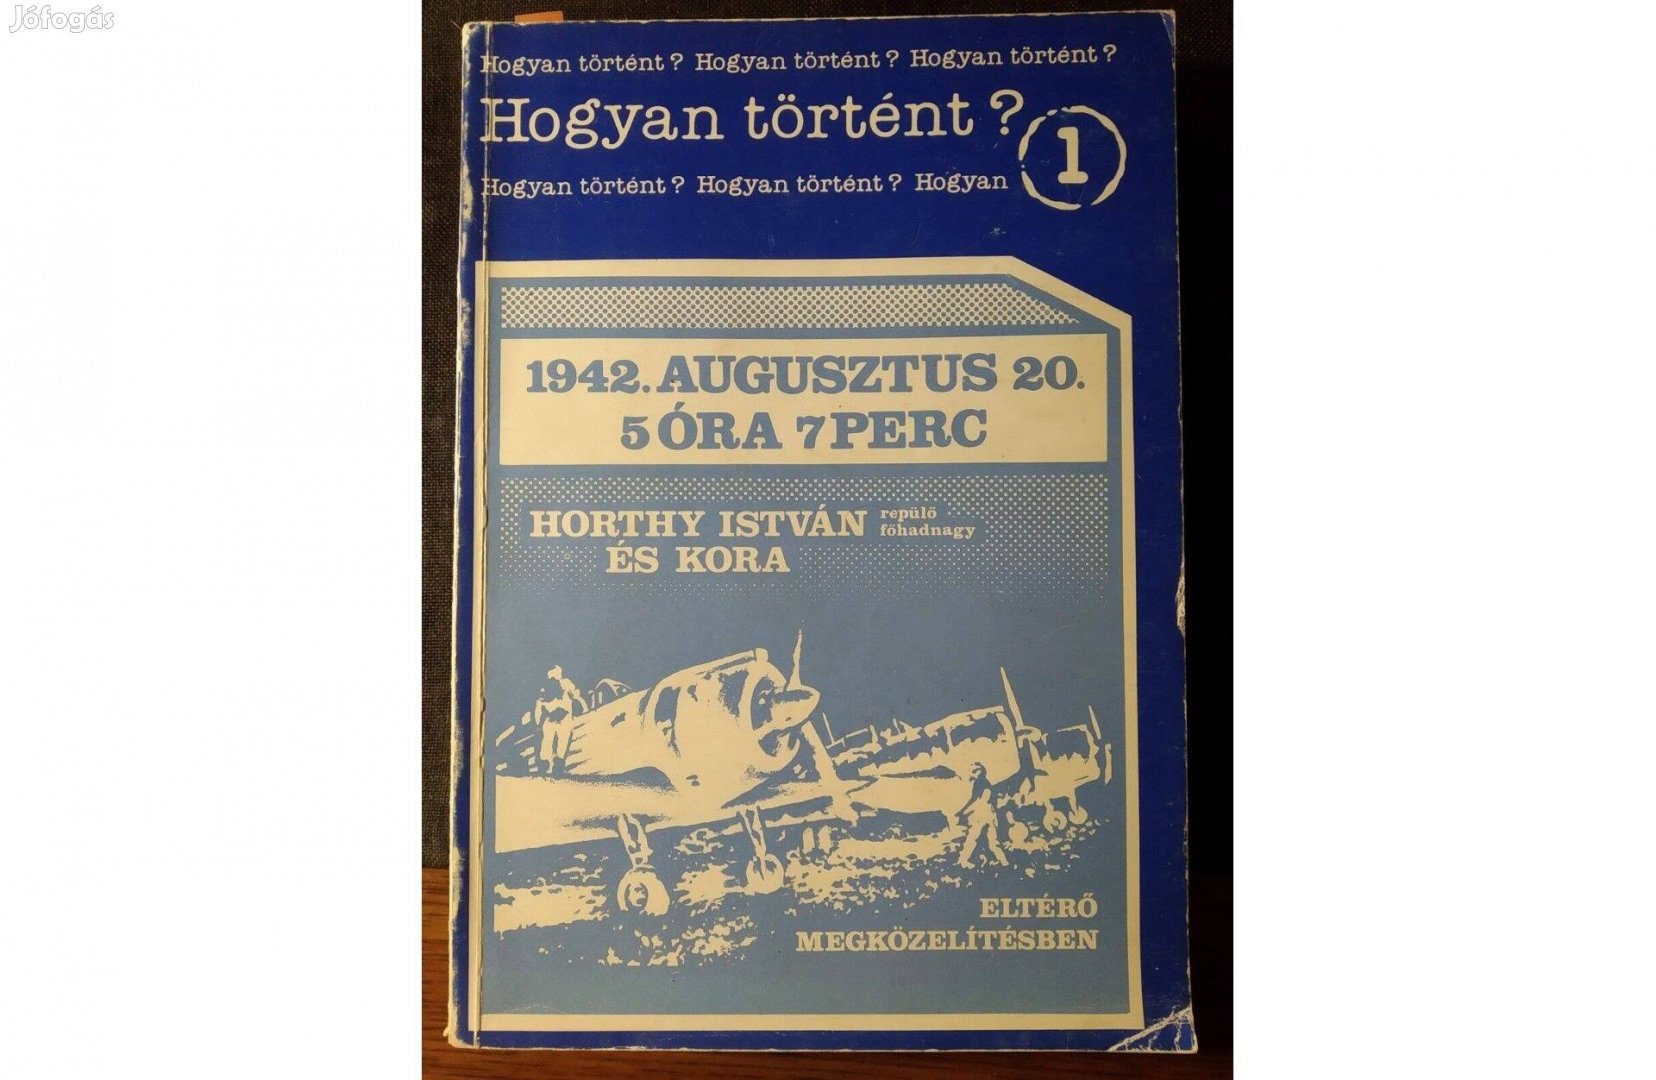 1942. augusztus 20. 5 óra 7 perc Horthy István repülőfőhadnagy és ko